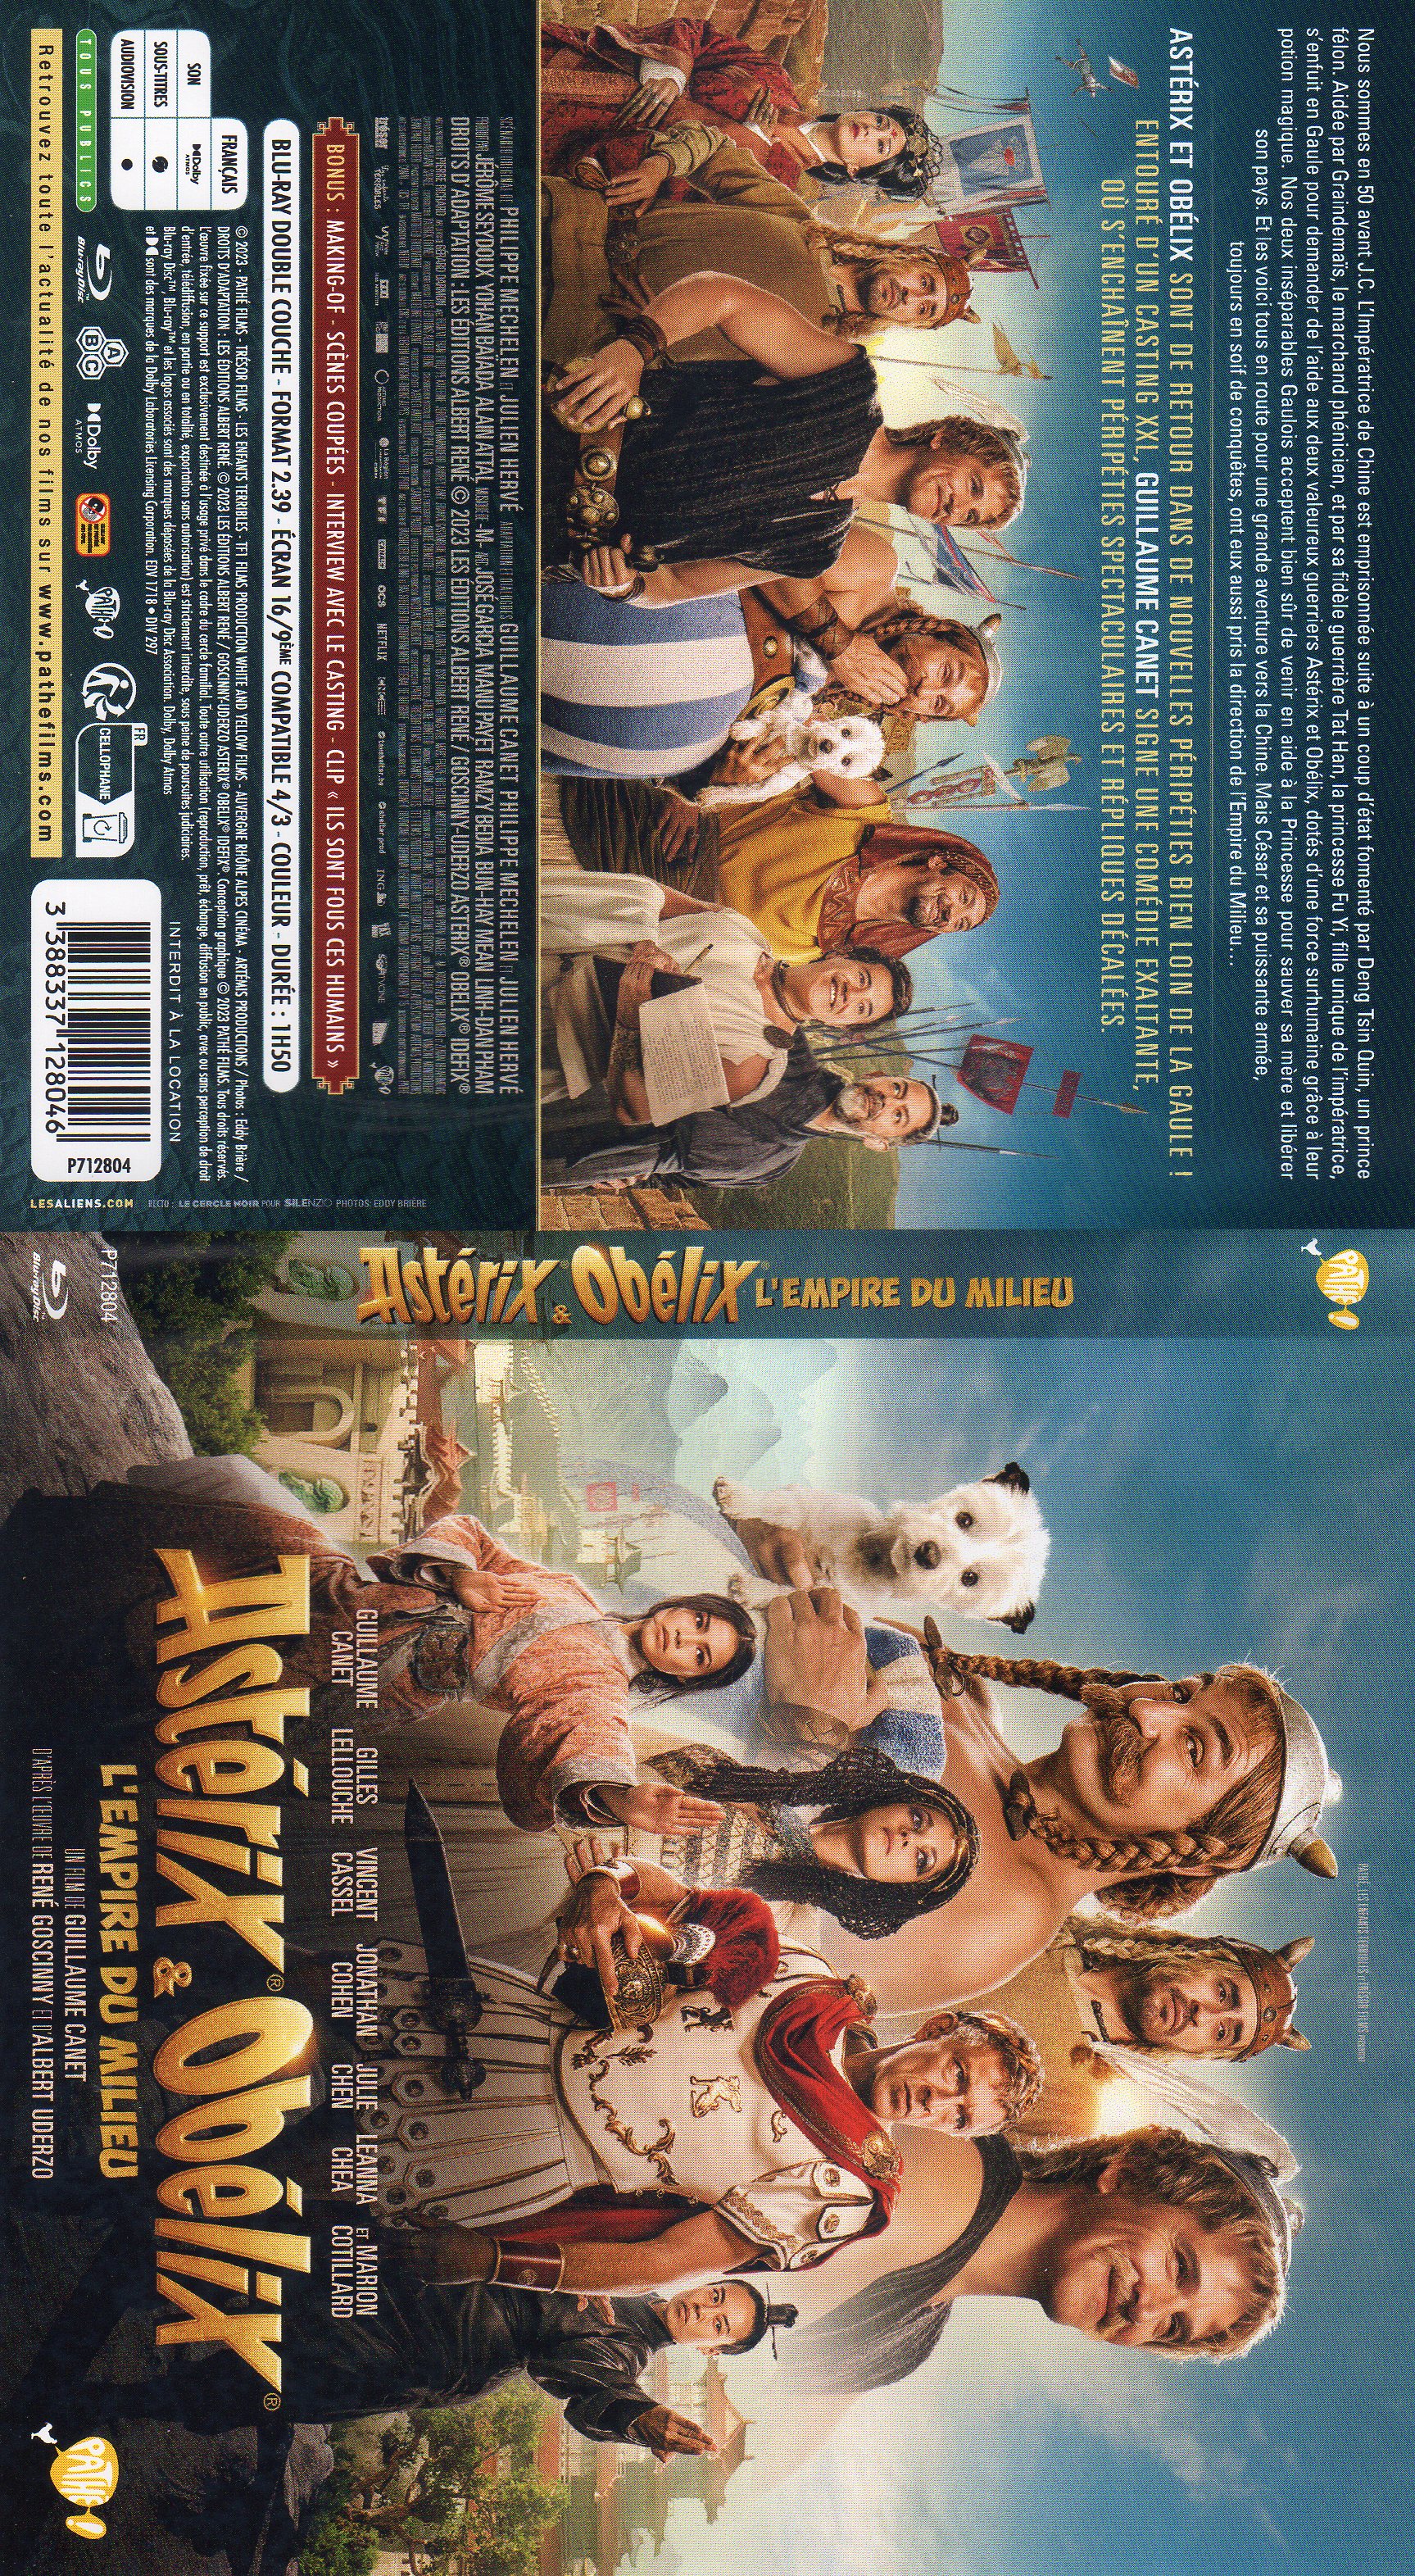 Jaquette DVD Asterix et Oblix L